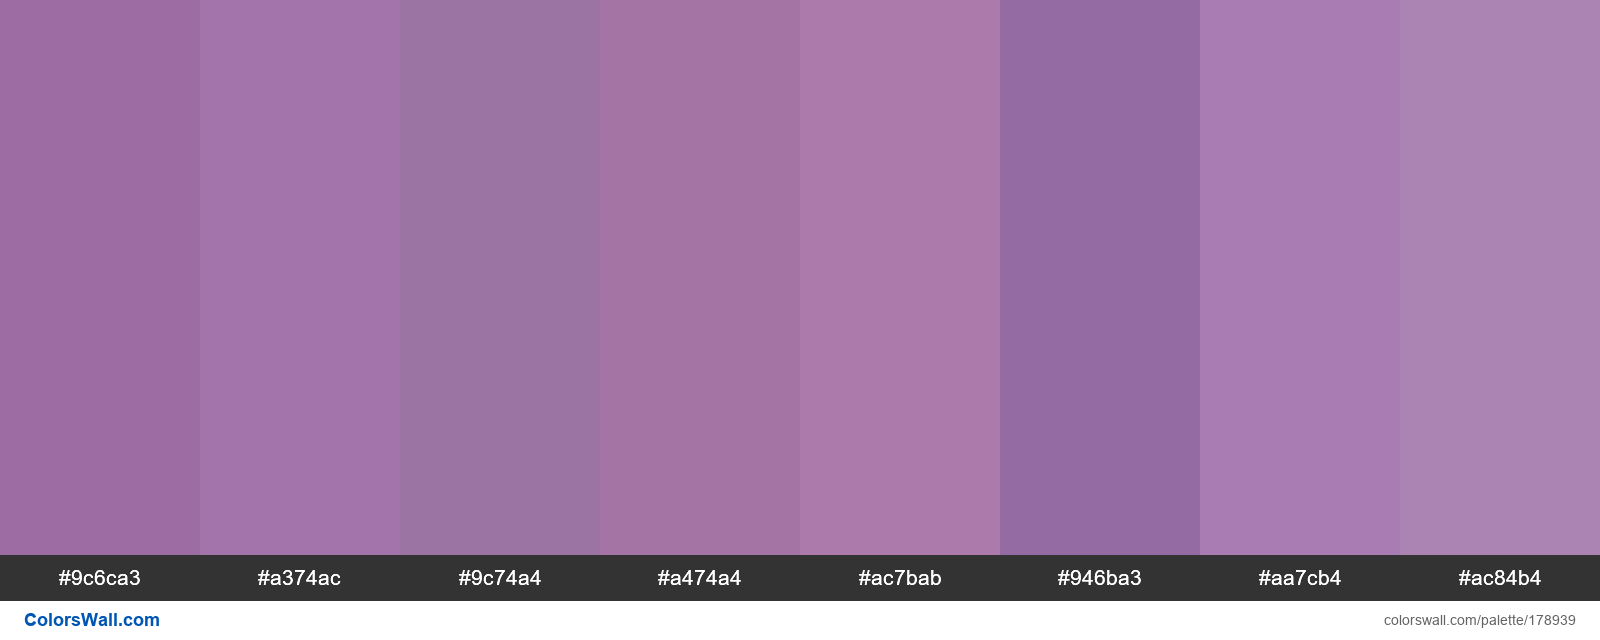 Purple colors palette #9c6ca3, #a374ac, #9c74a4 - ColorsWall